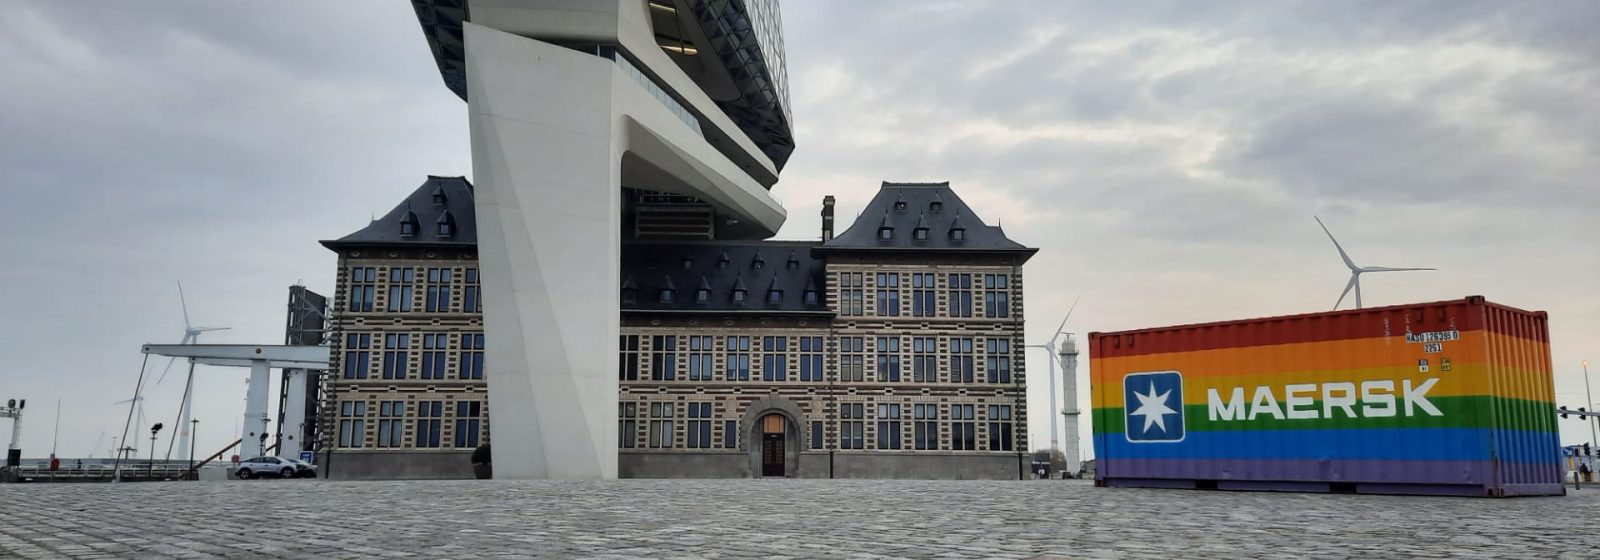 Regenboogcontainer van Maersk voor het Havenhuis in Antwerpen